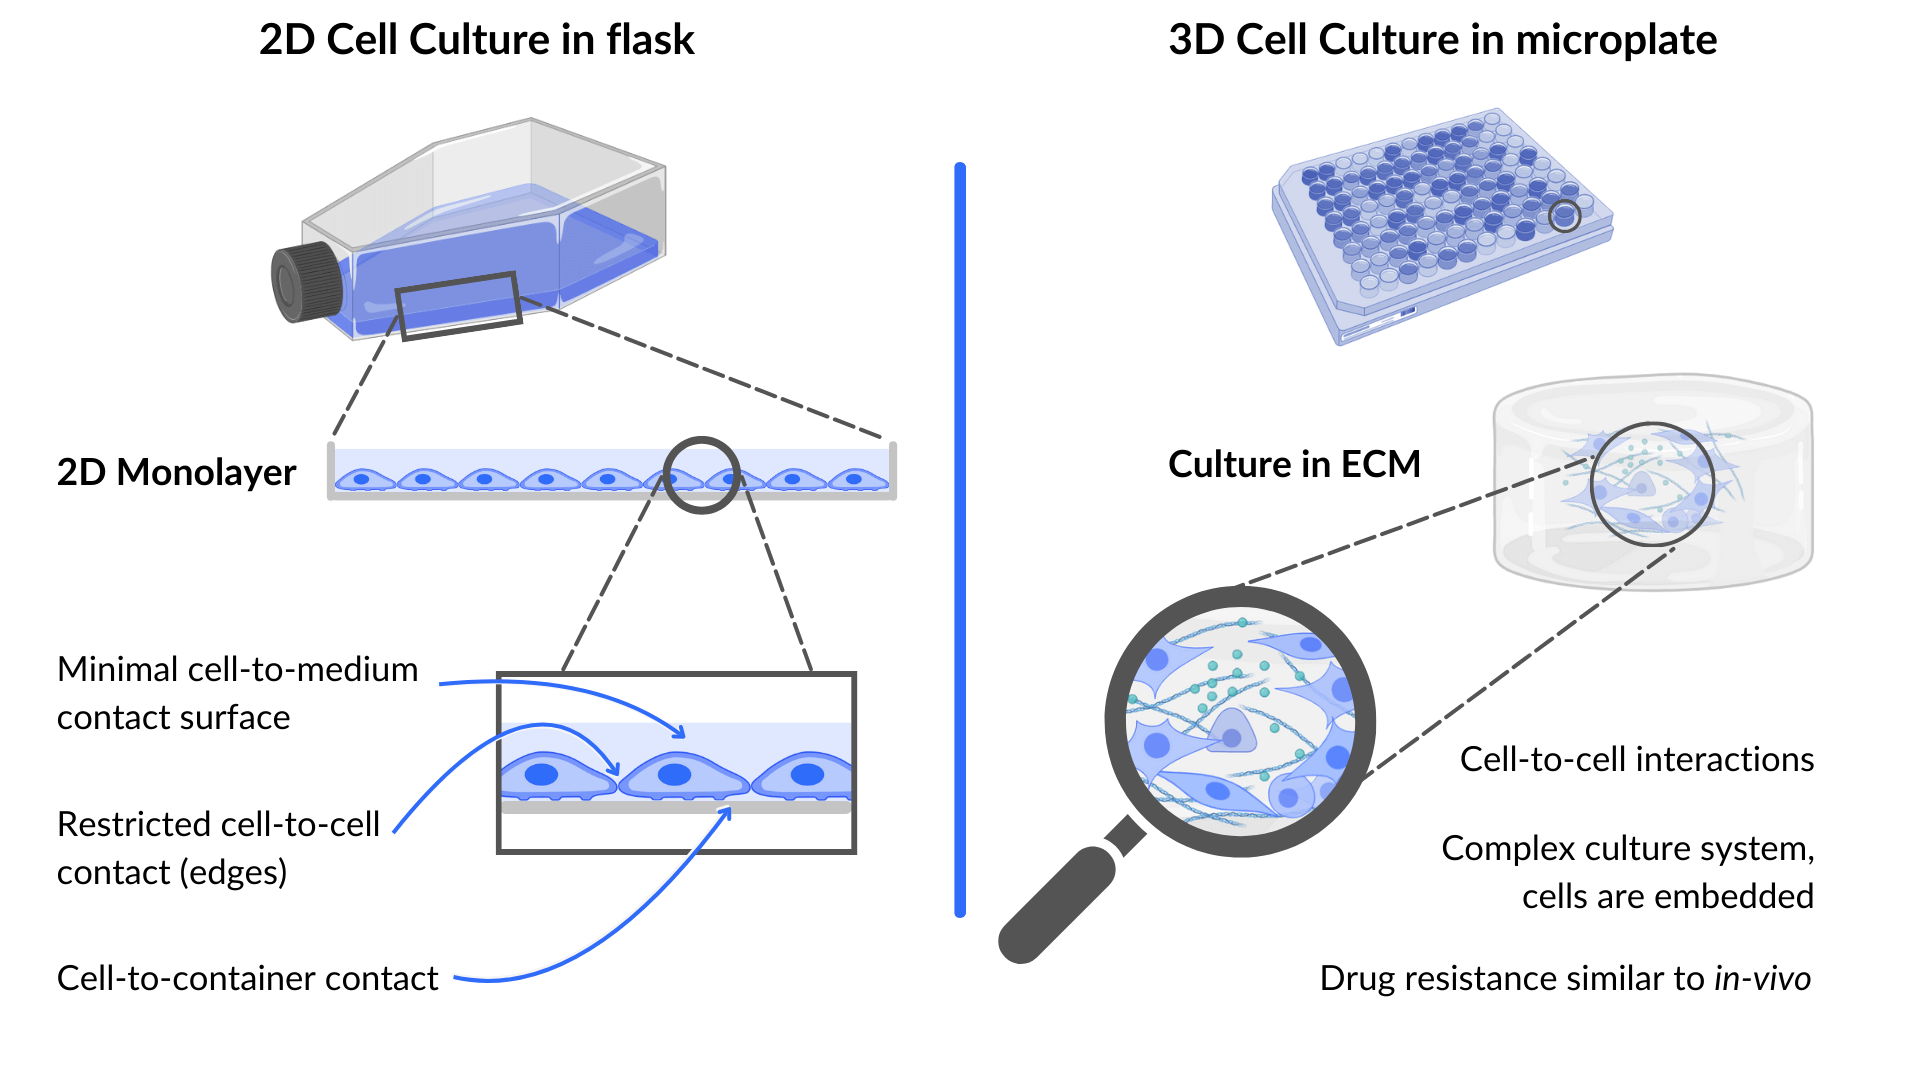 3D Cell Culture: Advantages and Disadvantages